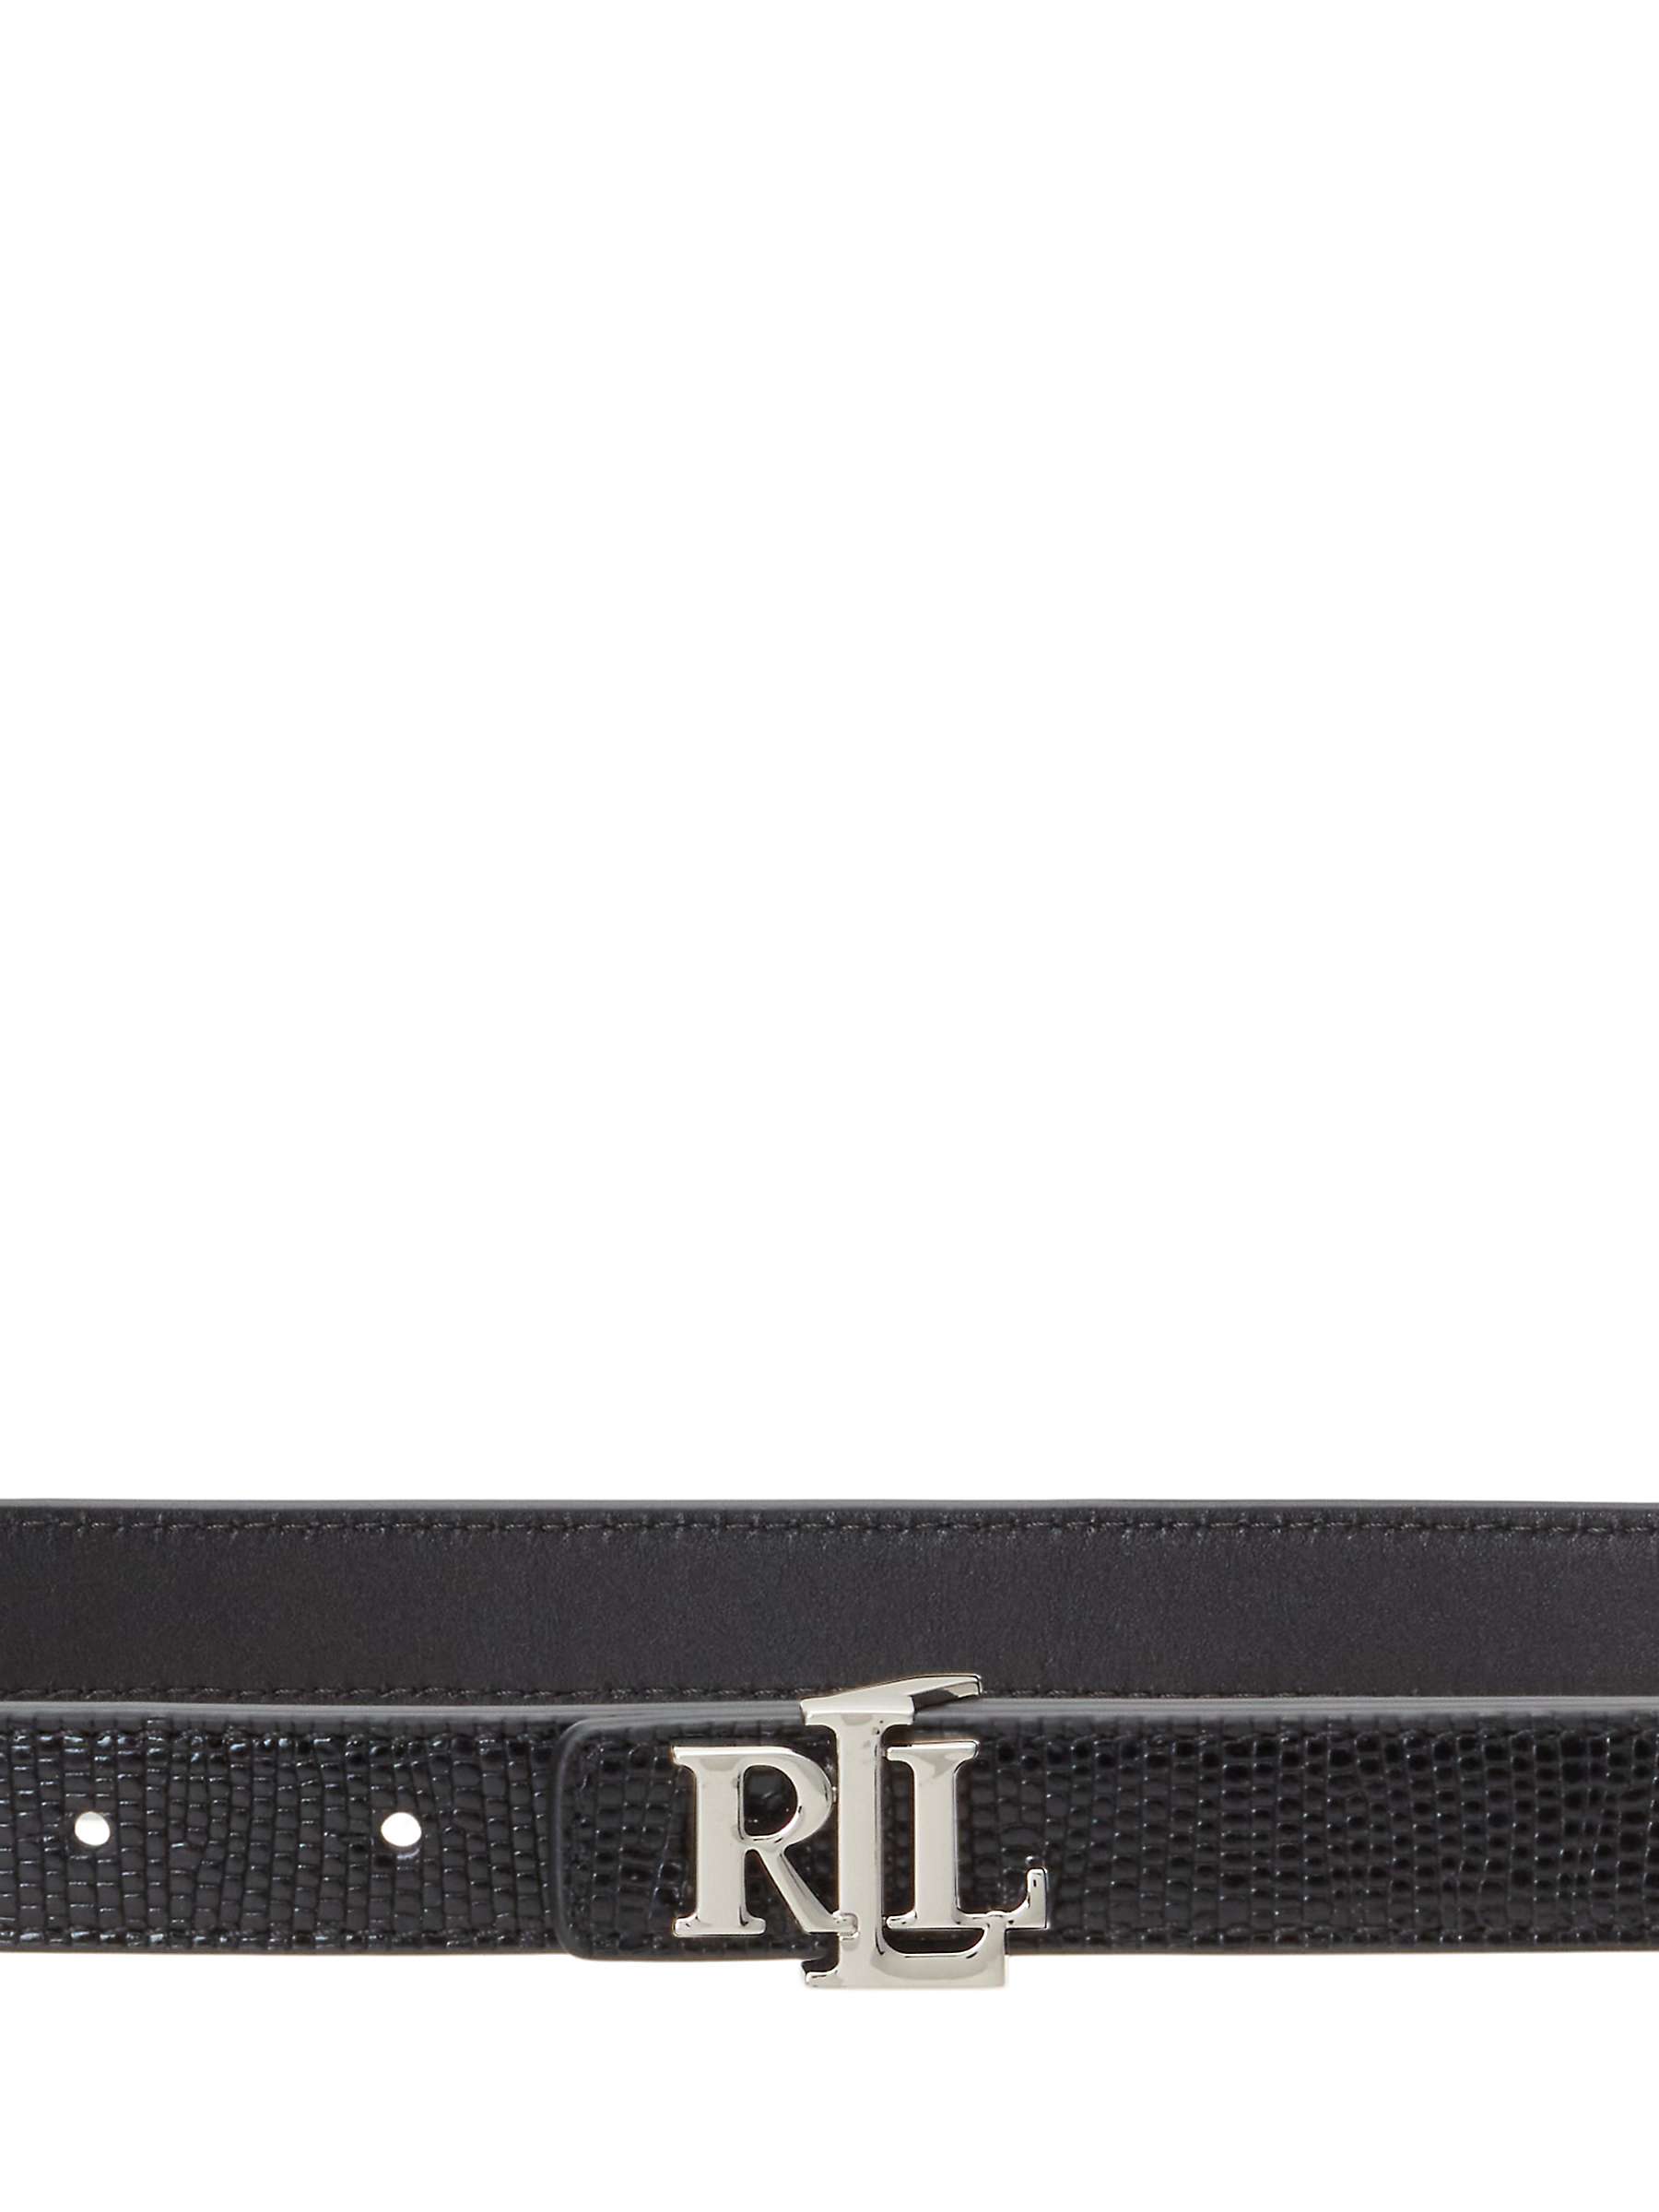 Buy Lauren Ralph Lauren Lizard Texture Reversible Leather Skinny Belt, Black/Black Online at johnlewis.com